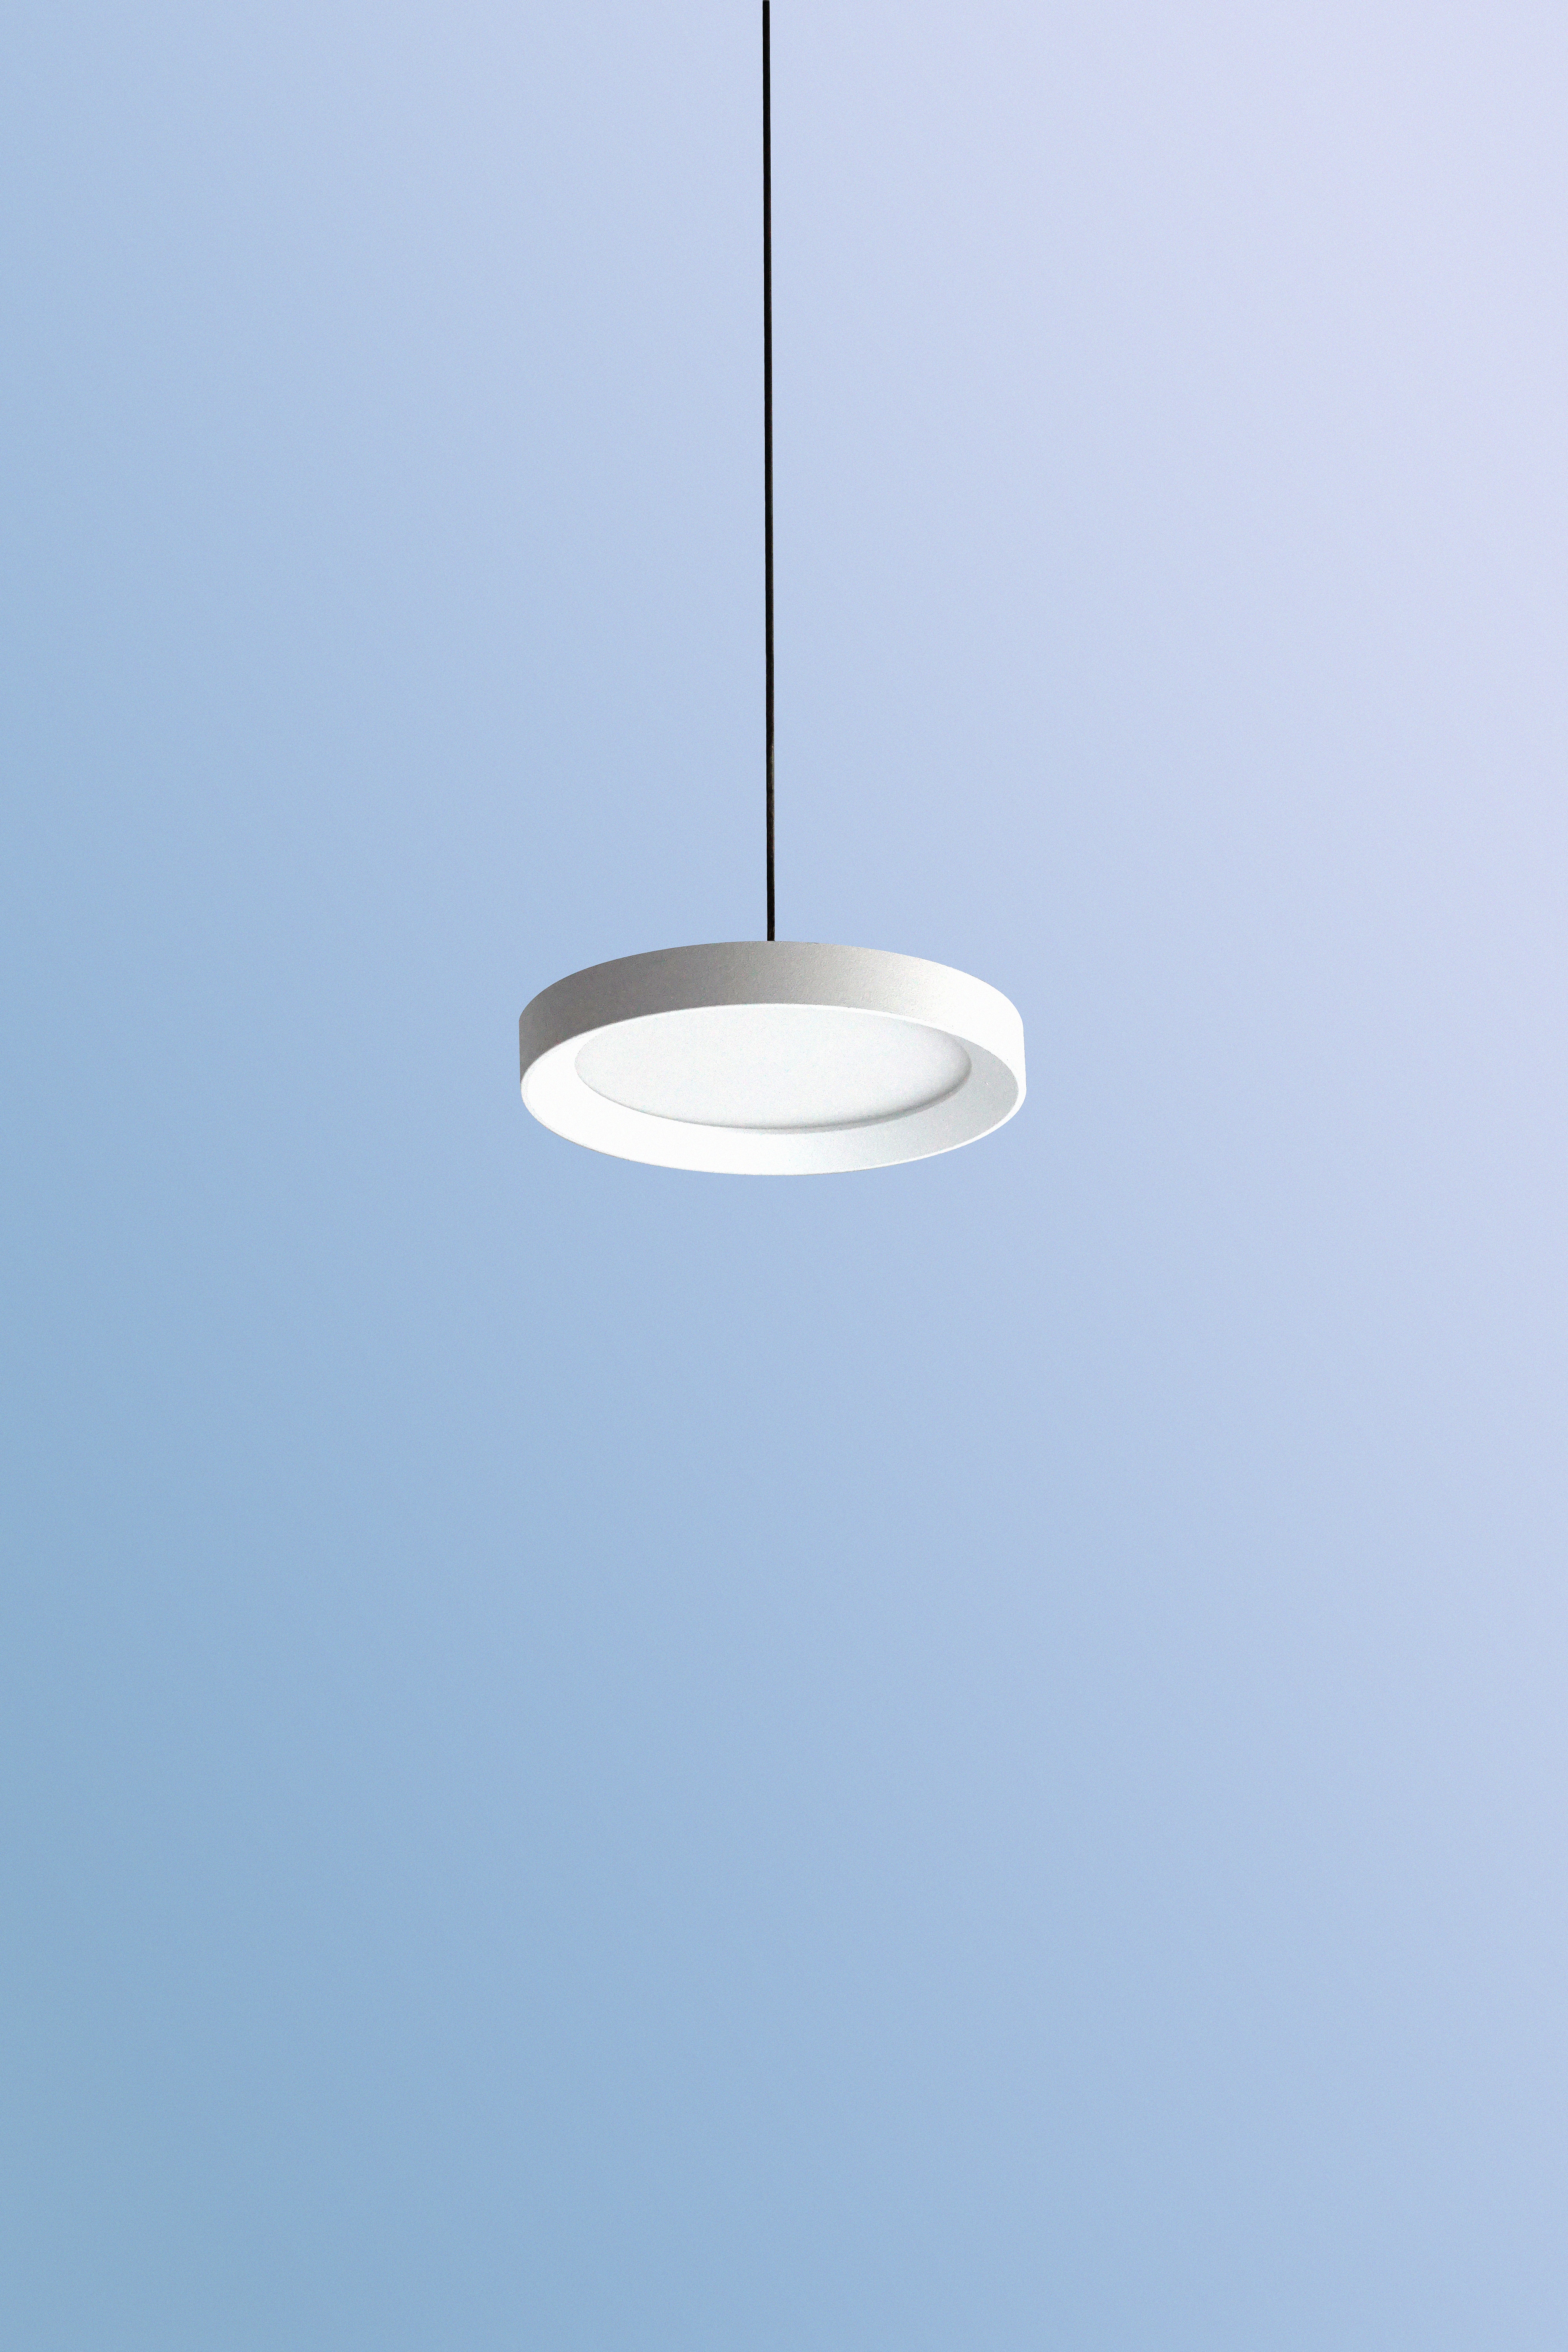 lamp, minimalism, white, round, chandelier